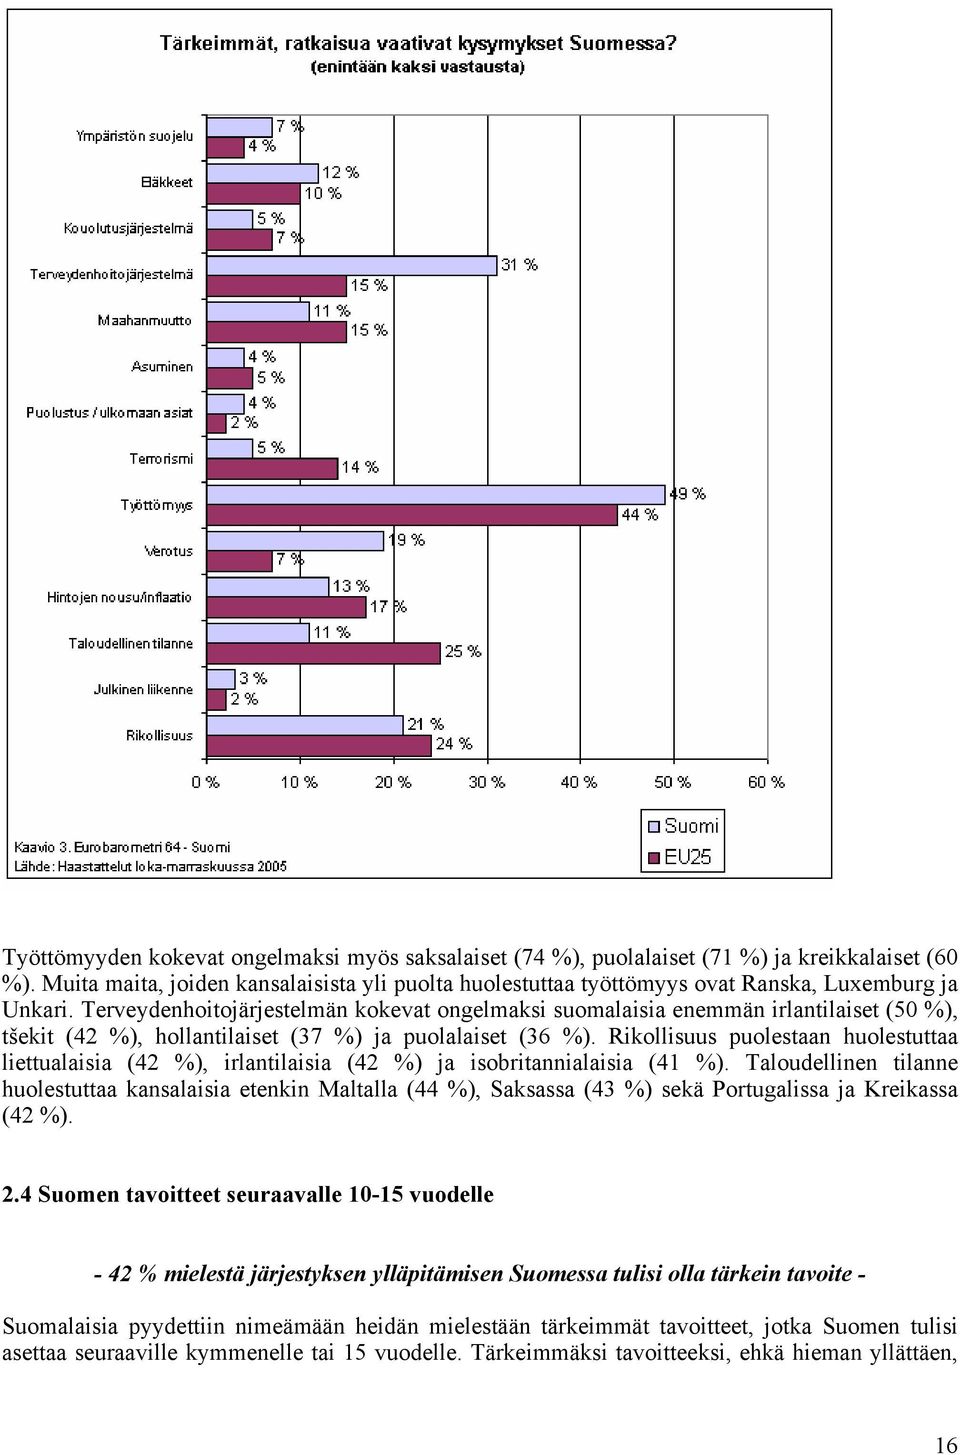 Terveydenhoitojärjestelmän kokevat ongelmaksi suomalaisia enemmän irlantilaiset (50 %), tšekit (42 %), hollantilaiset (37 %) ja puolalaiset (36 %).